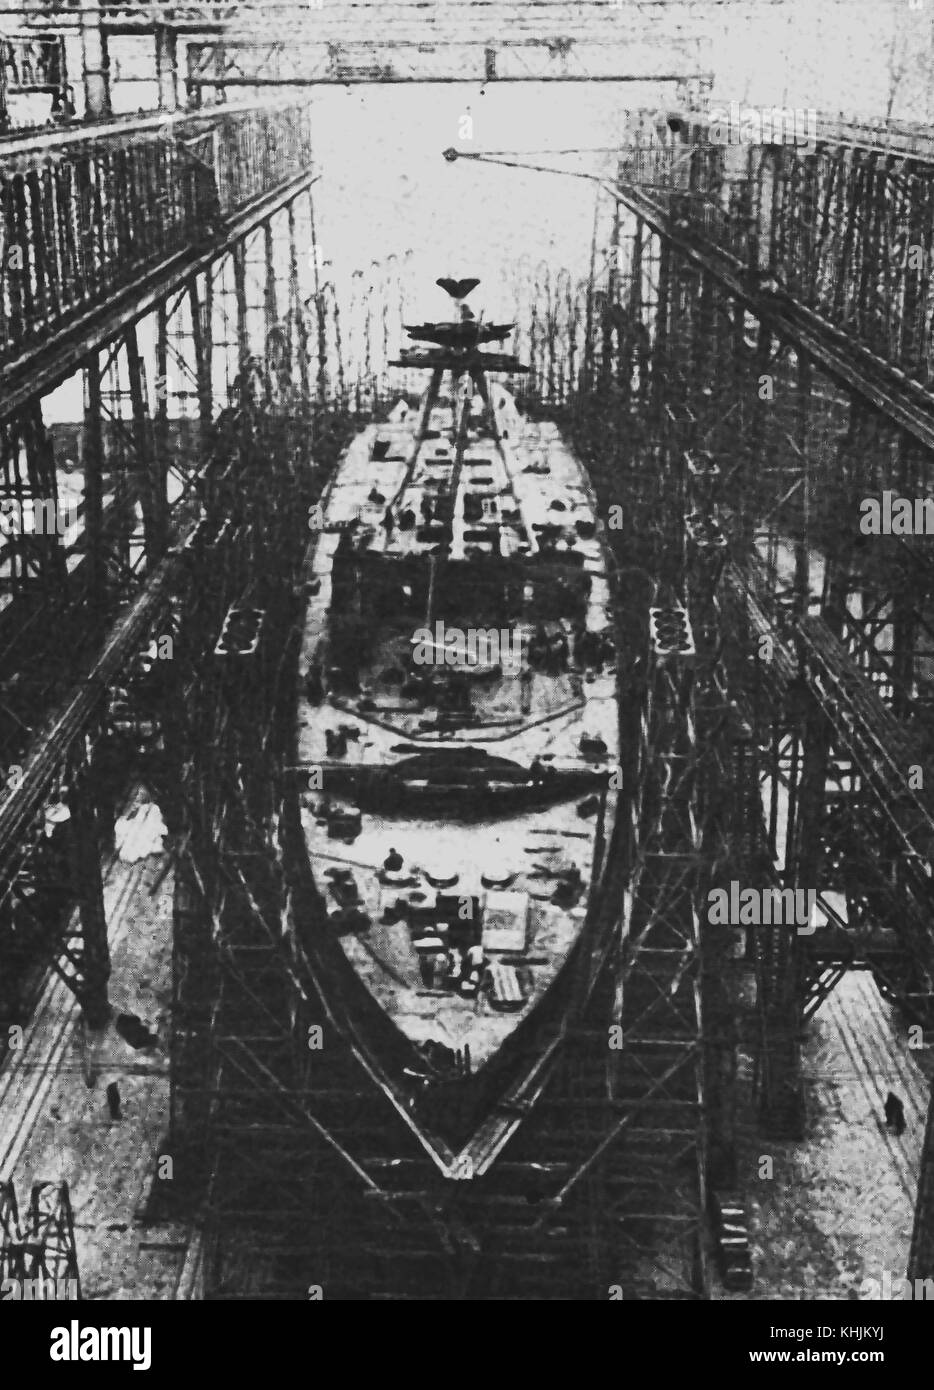 La prima guerra mondiale - la Royal Navy - 1919 - Royal Navy - UN REGNO UNITO incrociatore leggero in costruzione presso un cantiere navale Foto Stock